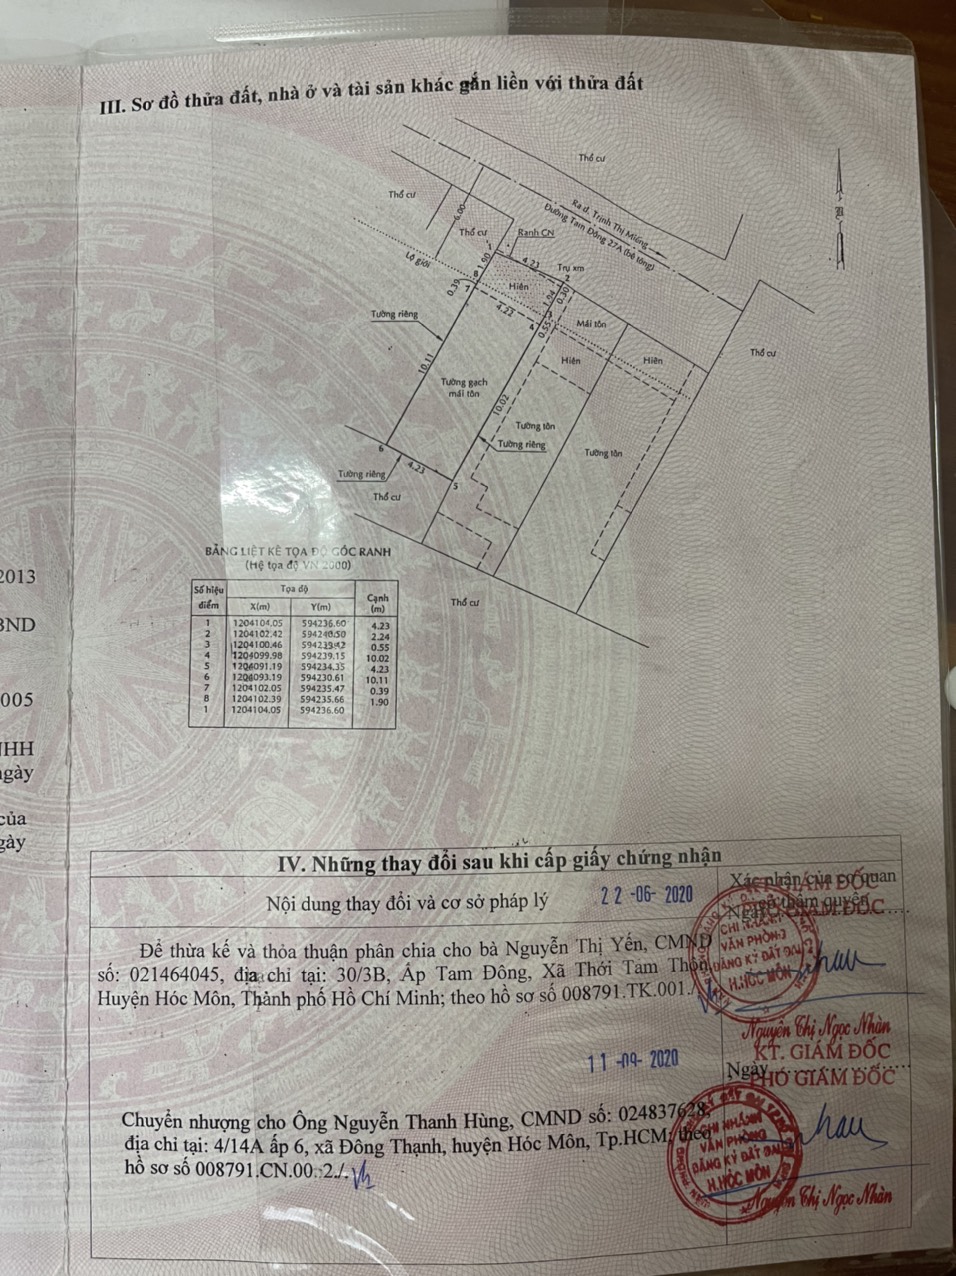 Chính chủ cần bán nhanh nhà Thới Tam Thôn Hóc Môn , TP Hồ Chí Minh